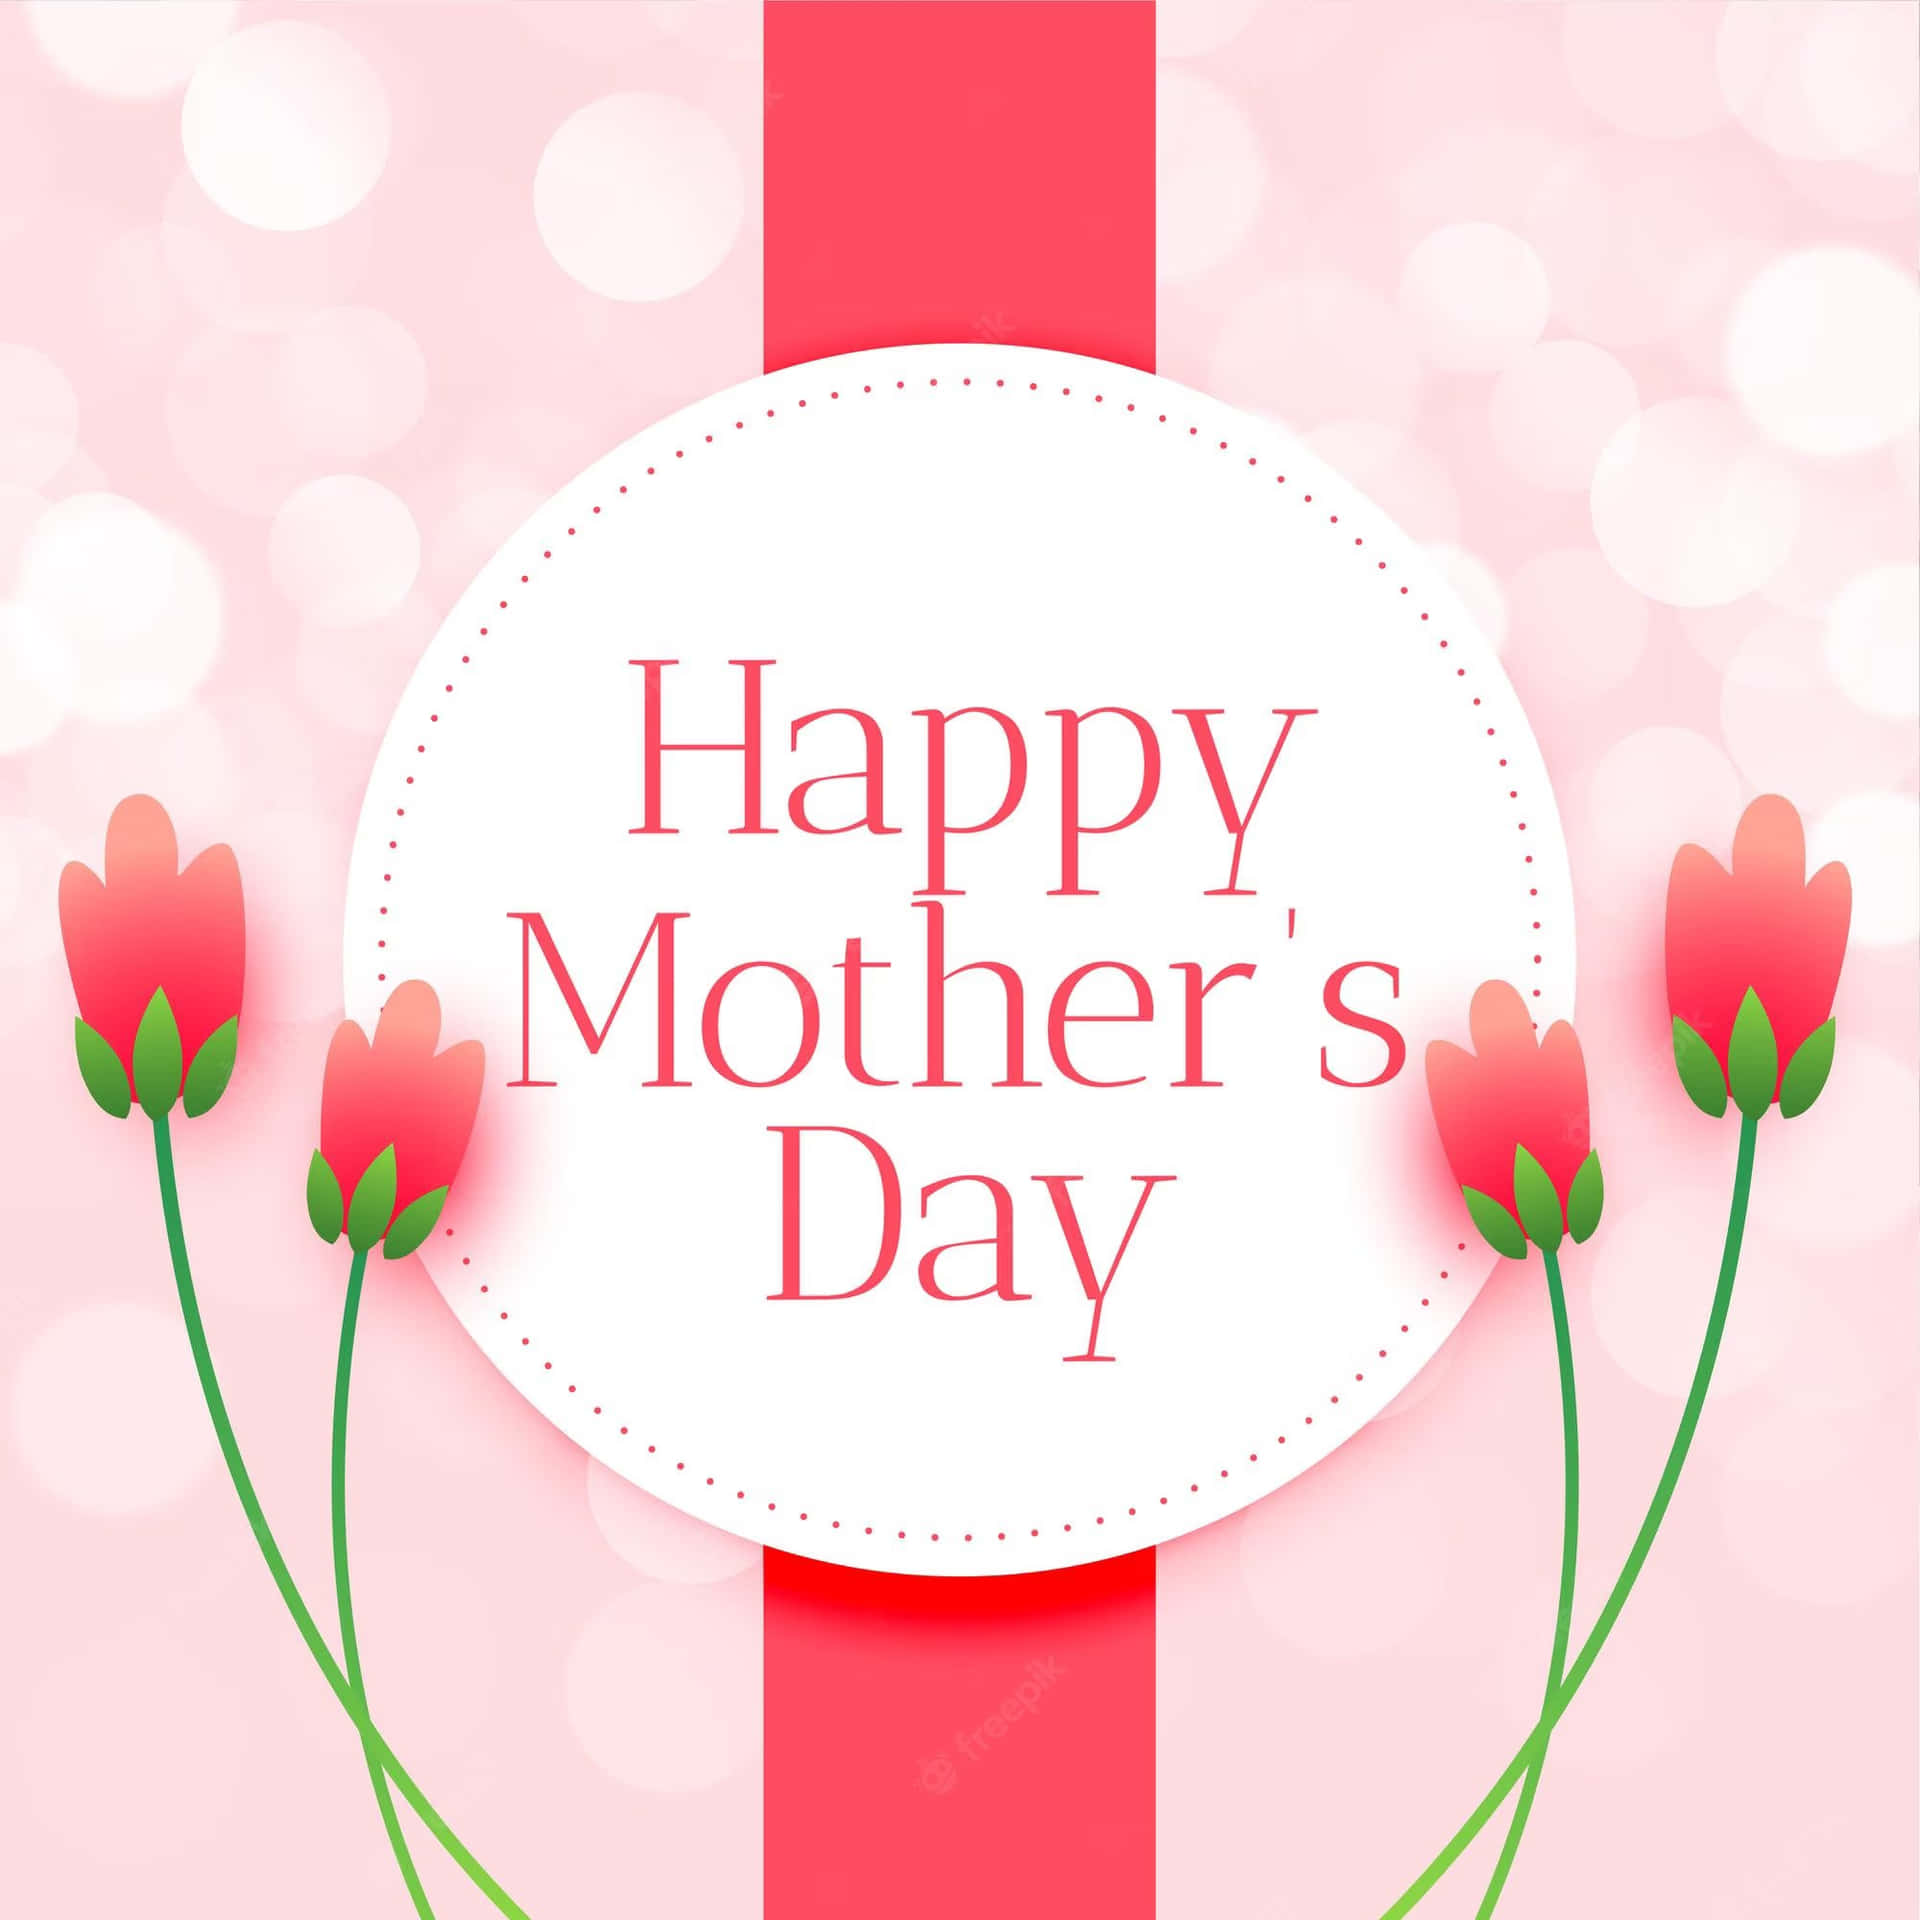 Desejandoa Todas As Mães Um Feliz E Encantador Dia Das Mães!